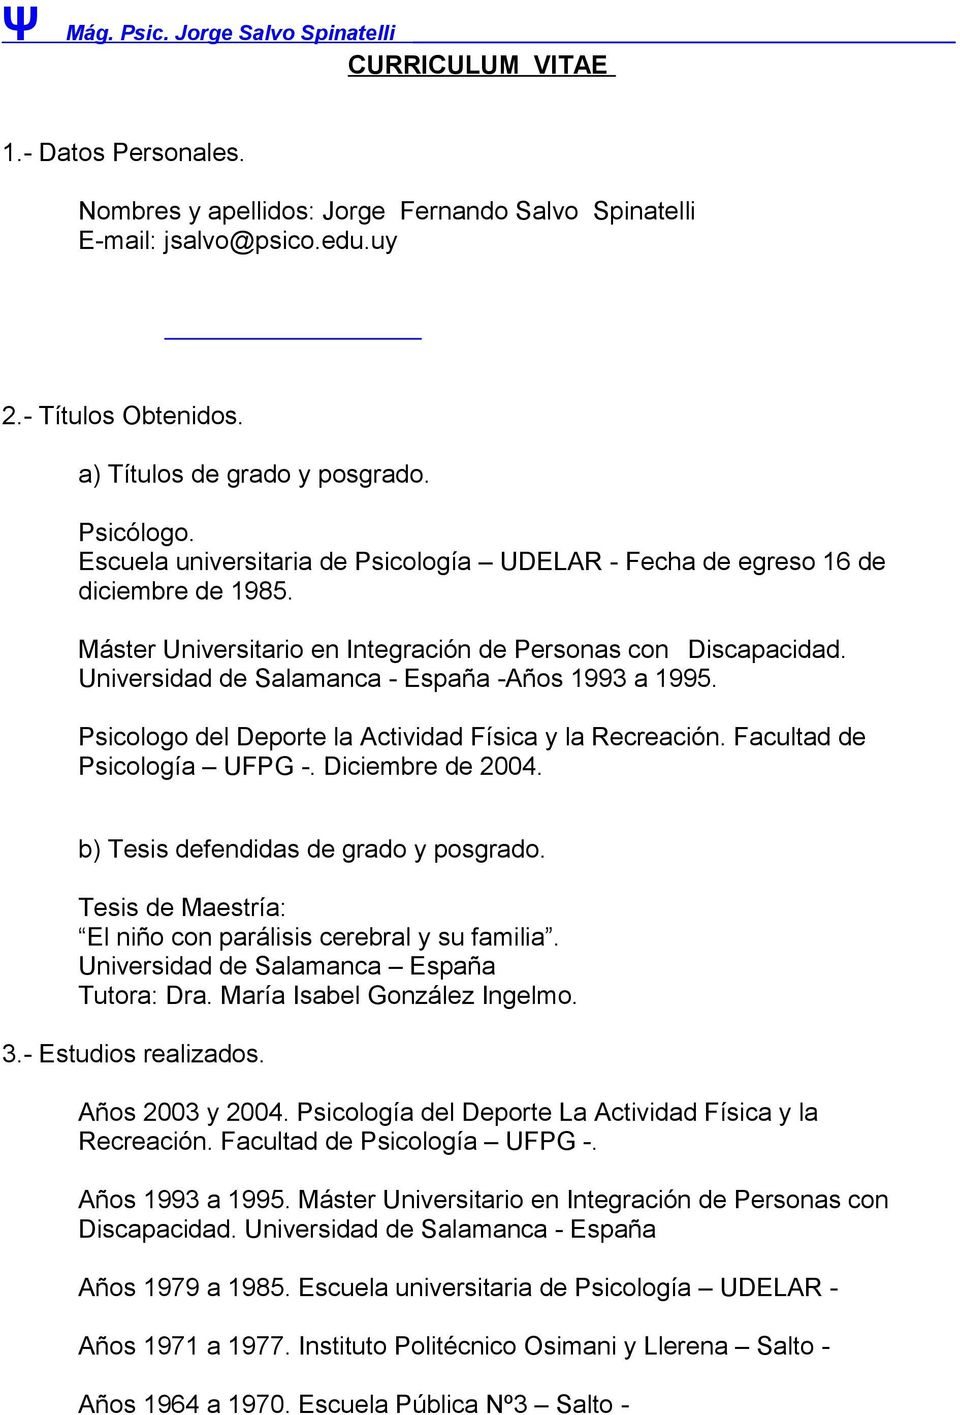 Universidad de Salamanca - España -Años 1993 a 1995. Psicologo del Deporte la Actividad Física y la Recreación. Facultad de Psicología UFPG -. Diciembre de 2004.